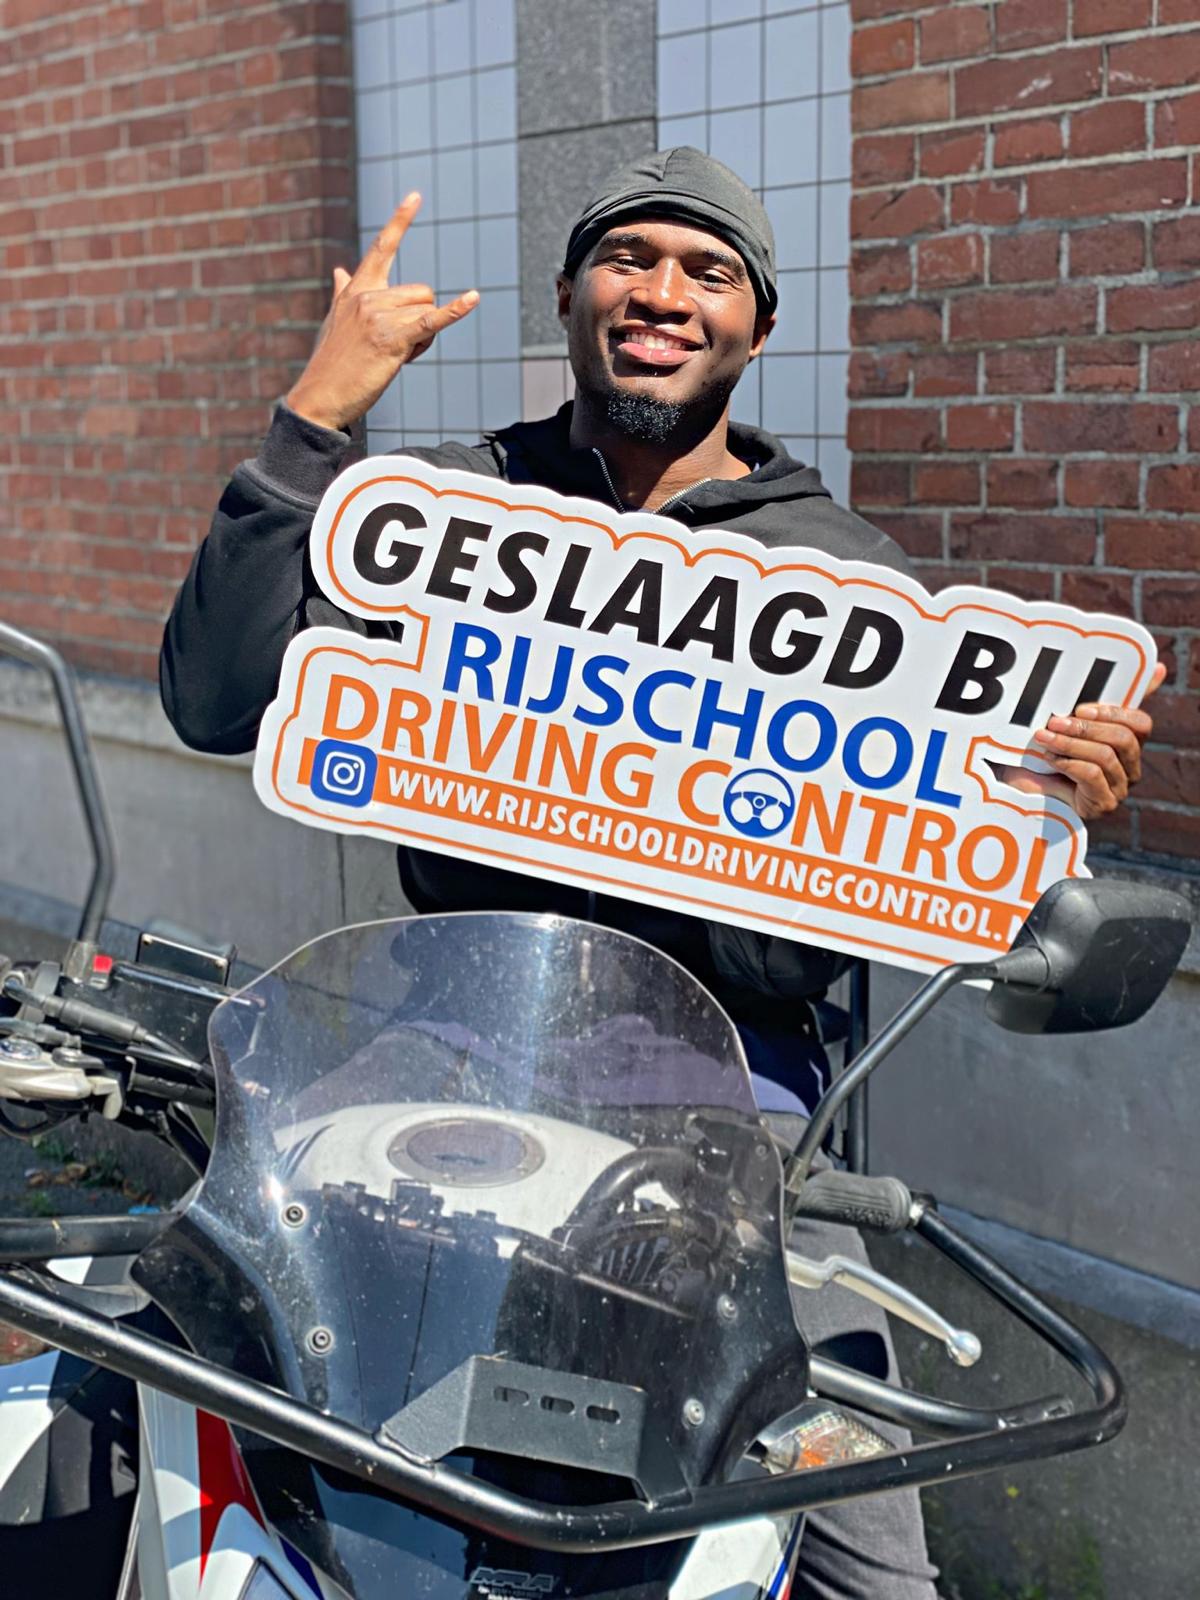 Geslaagd bij Rijschool driving control – Motor Rijbewijs halen in Rotterdam